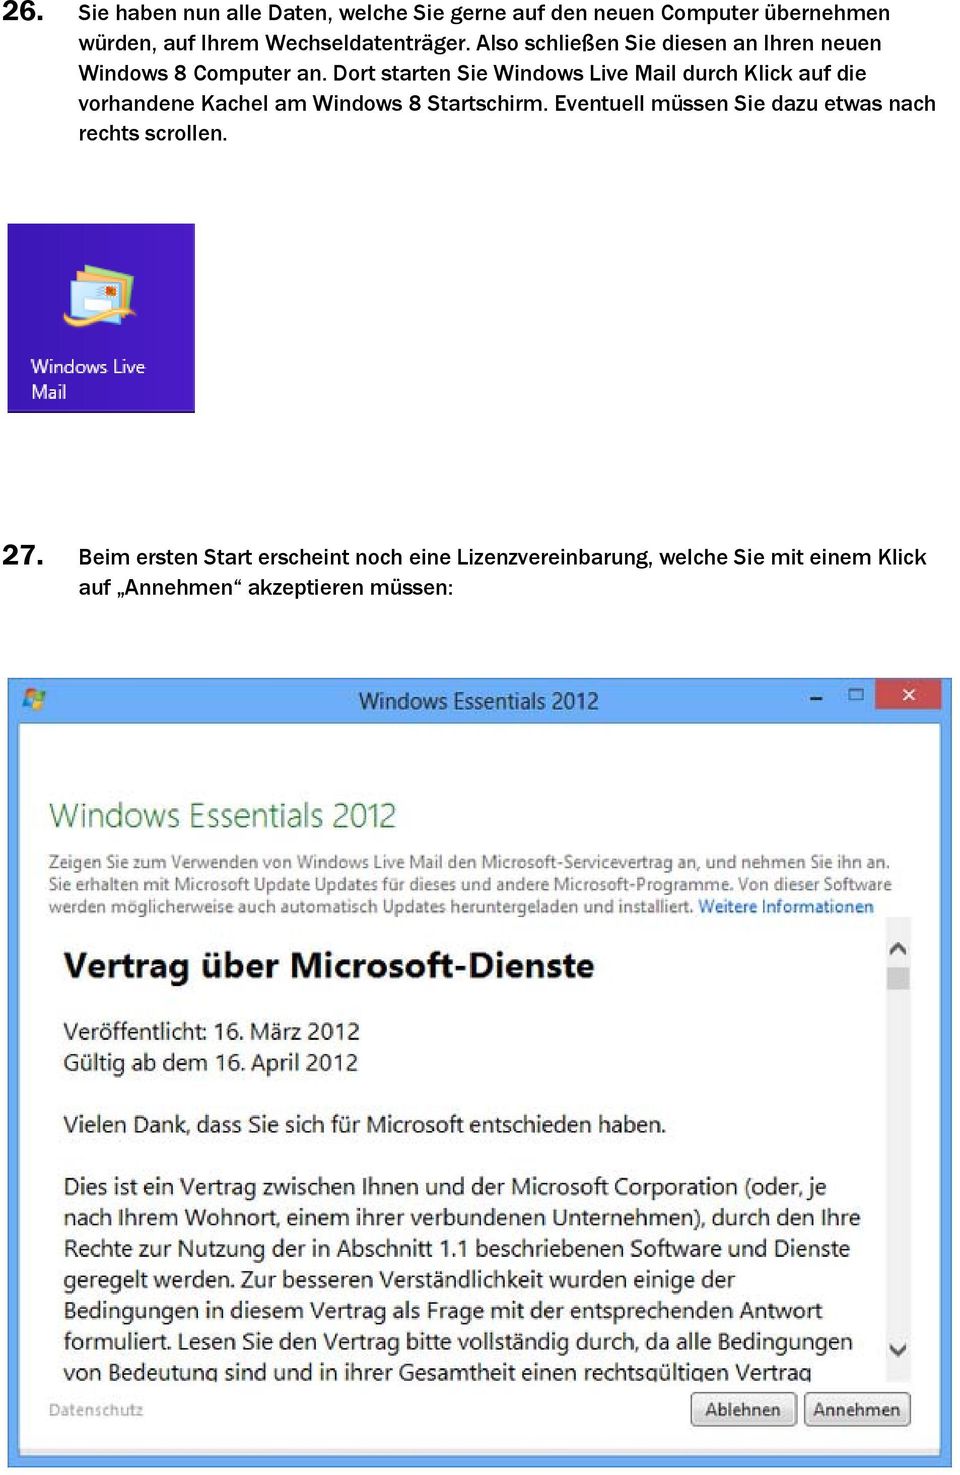 Dort starten Sie Windows Live Mail durch Klick auf die vorhandene Kachel am Windows 8 Startschirm.